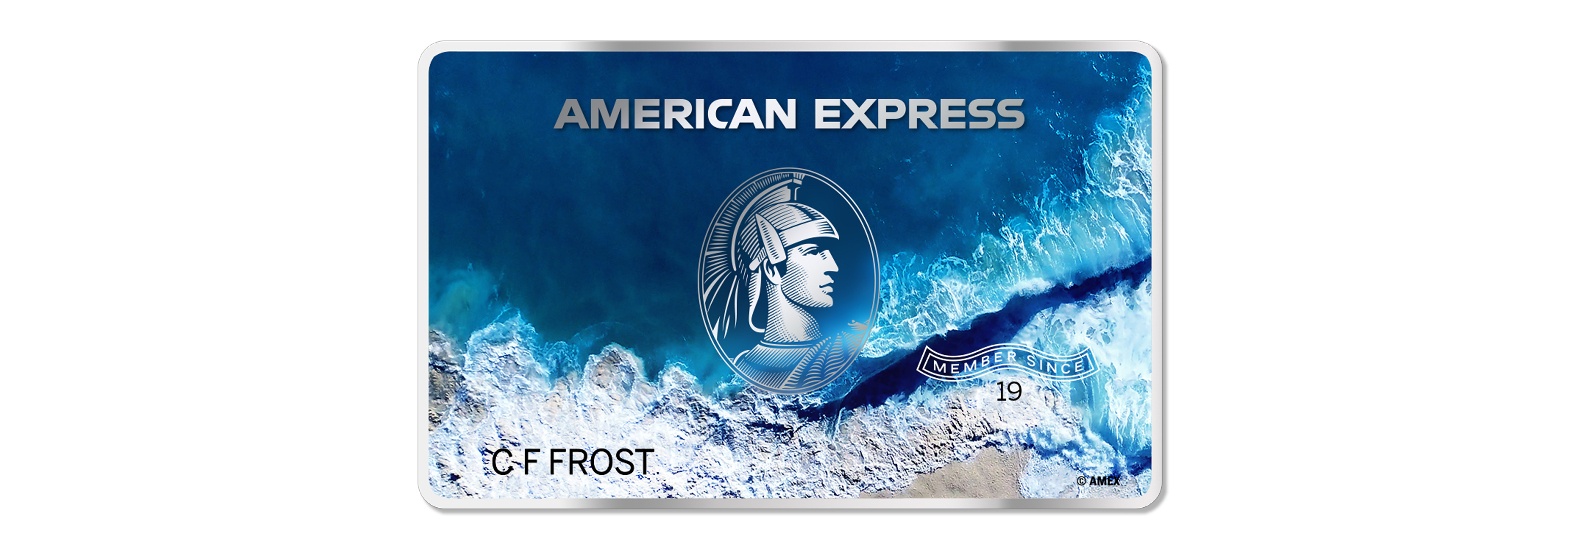 American Express vai oferecer cartões de crédito feitos de plástico retirado do oceano